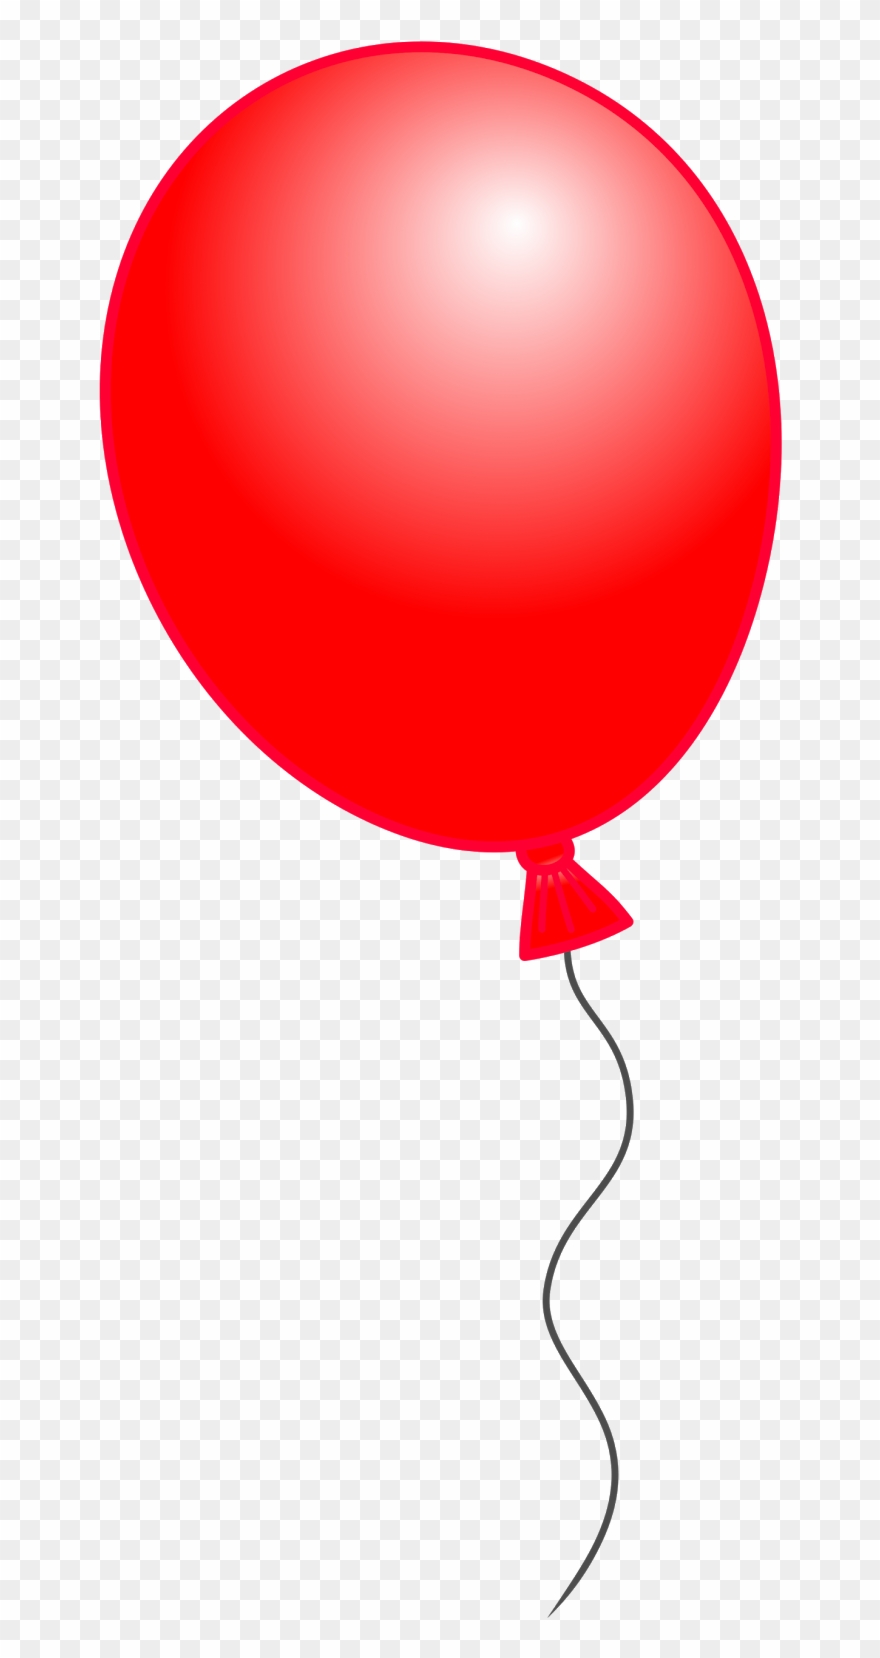 ballon clipart red